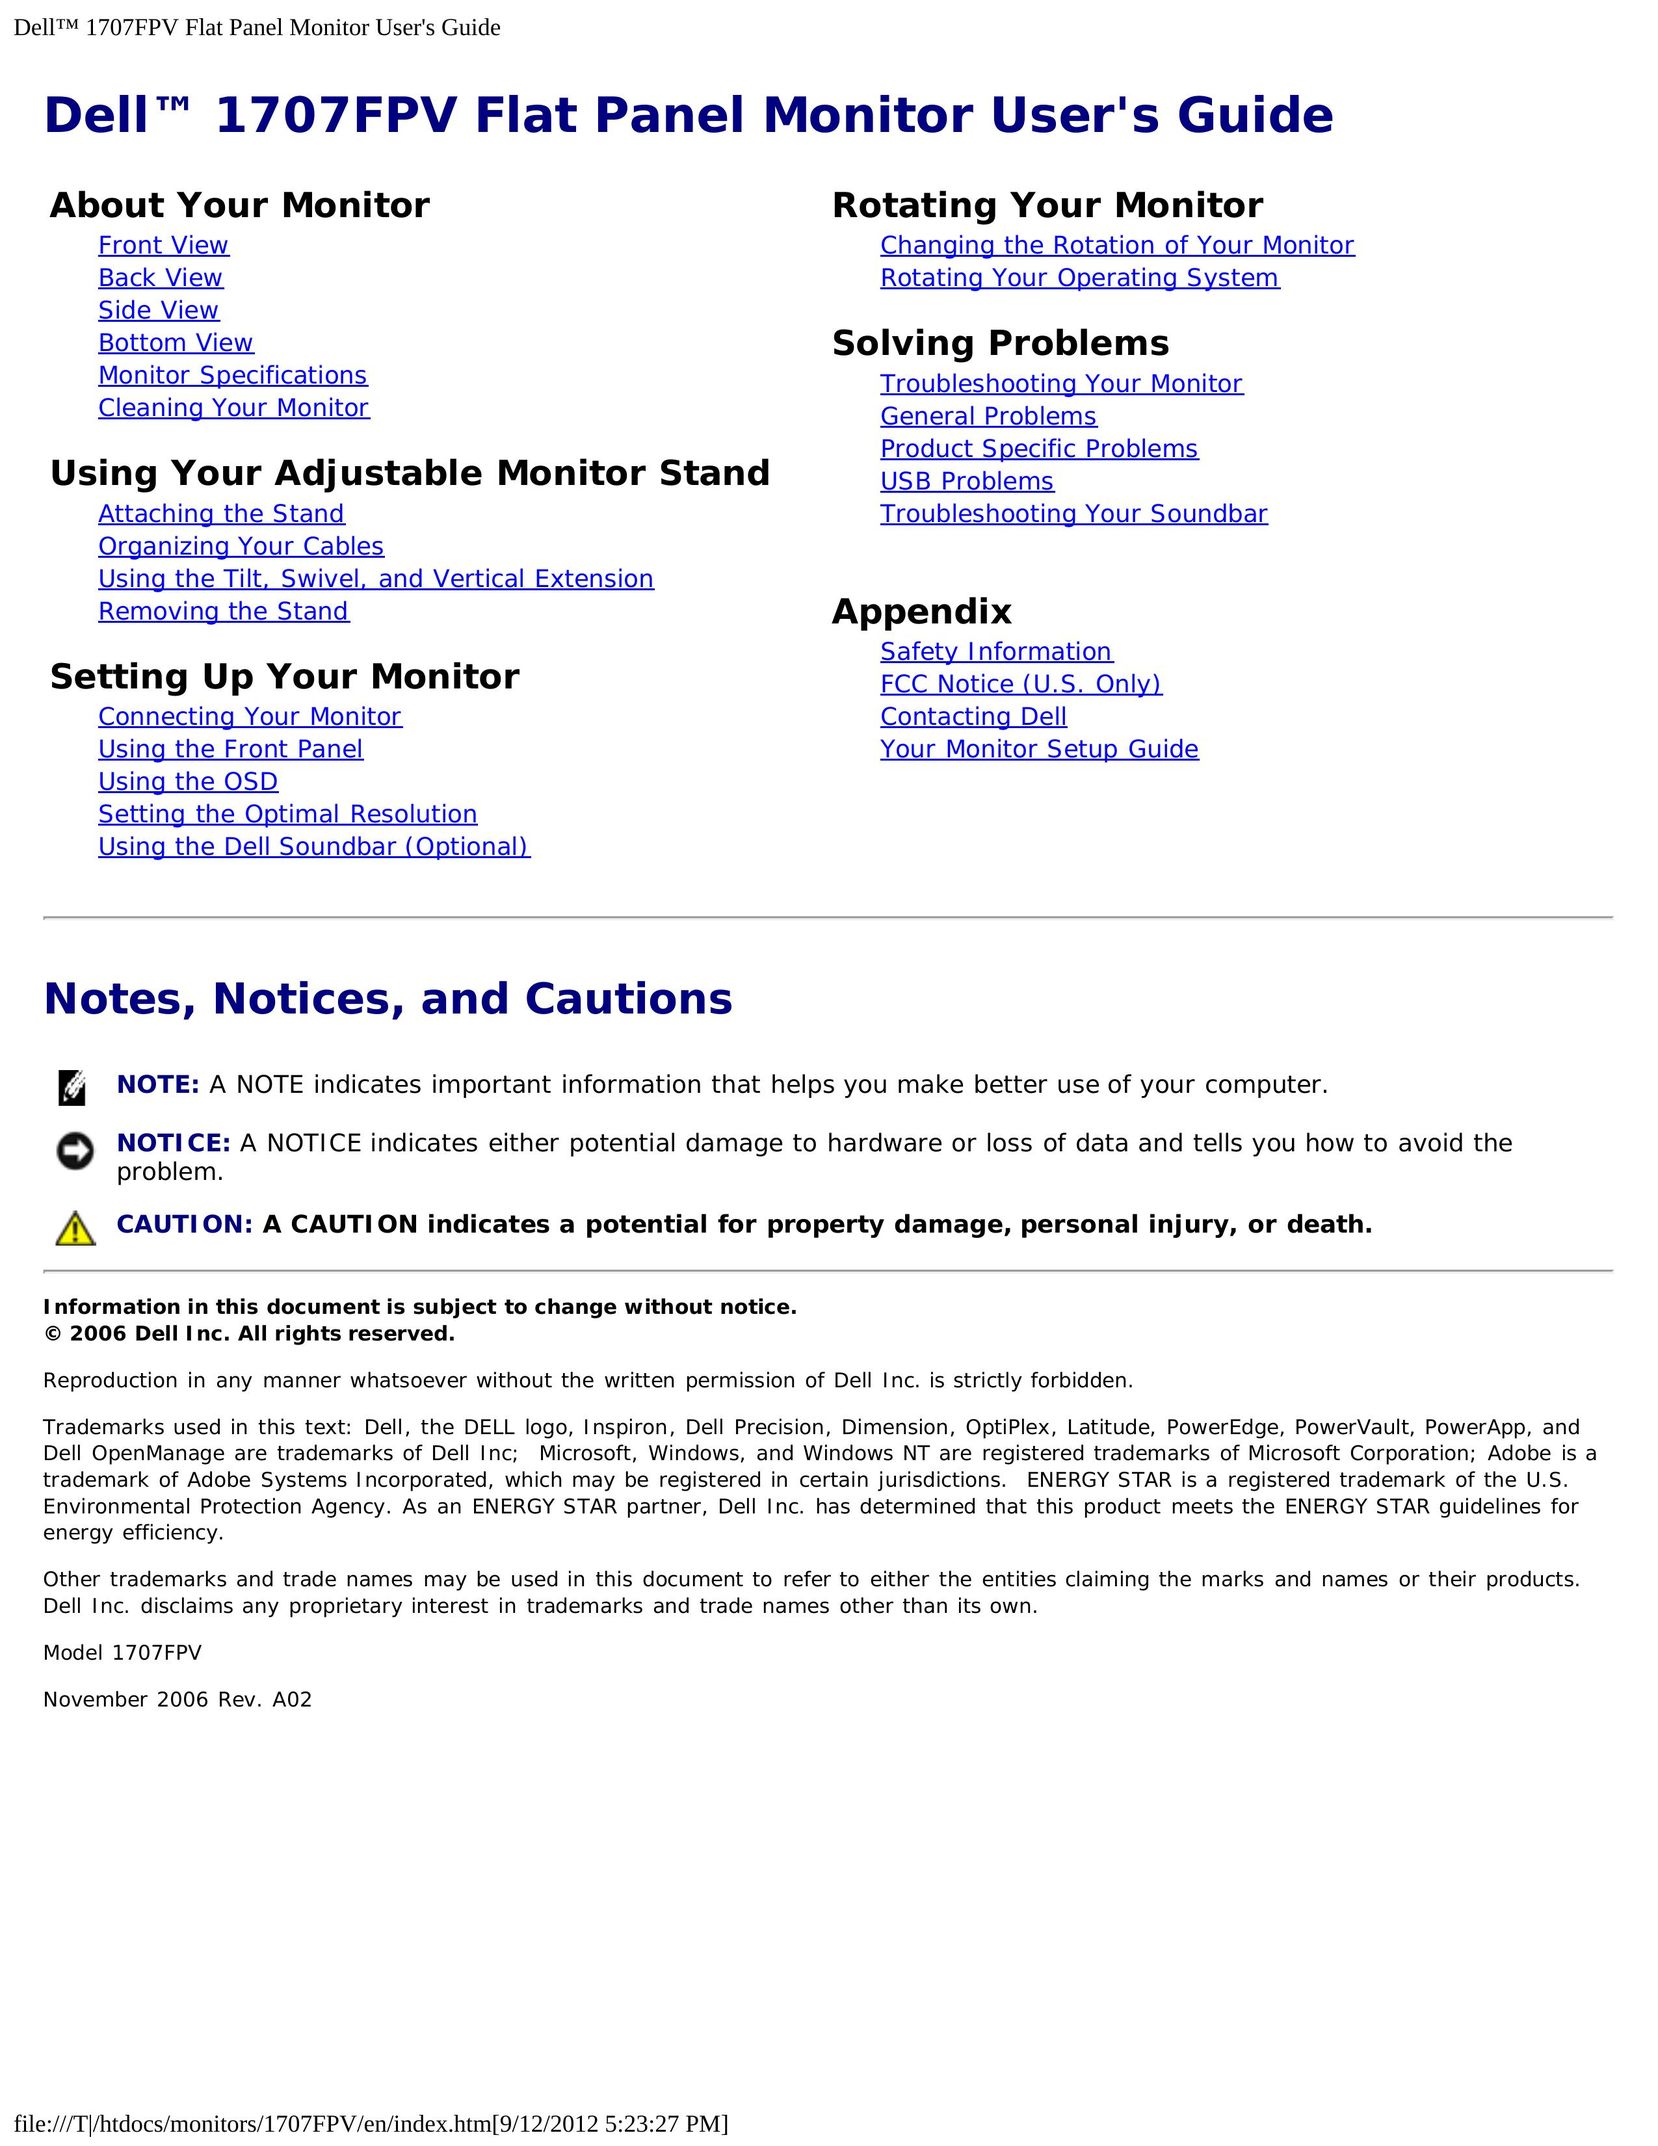 Dell 1707FPV Computer Monitor User Manual